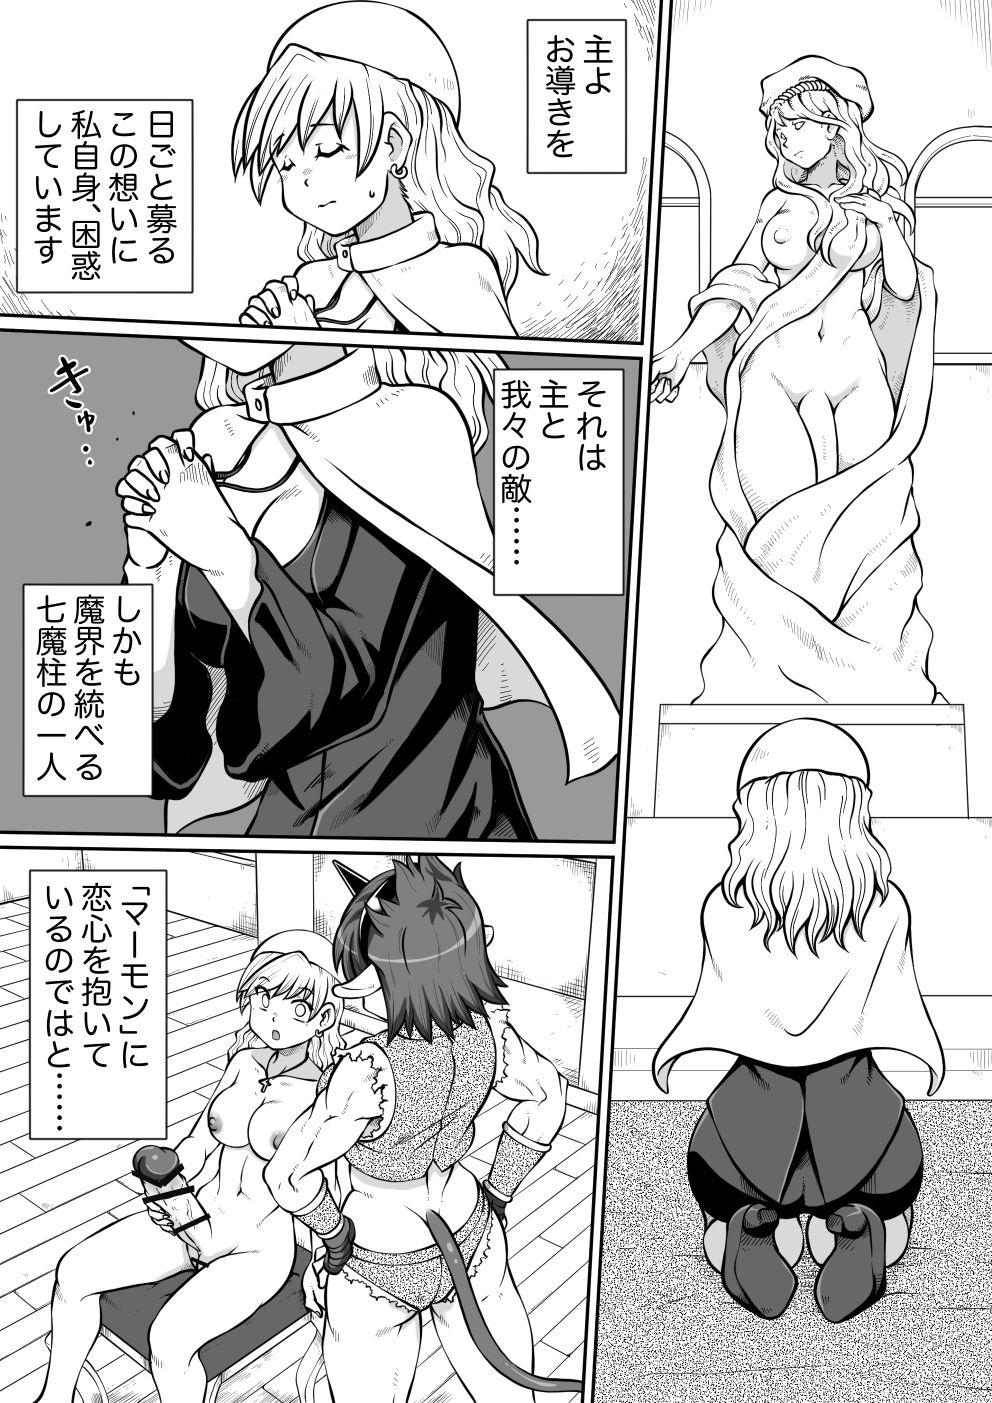 Periscope Ma no Akumabarai 2 Story - Page 3